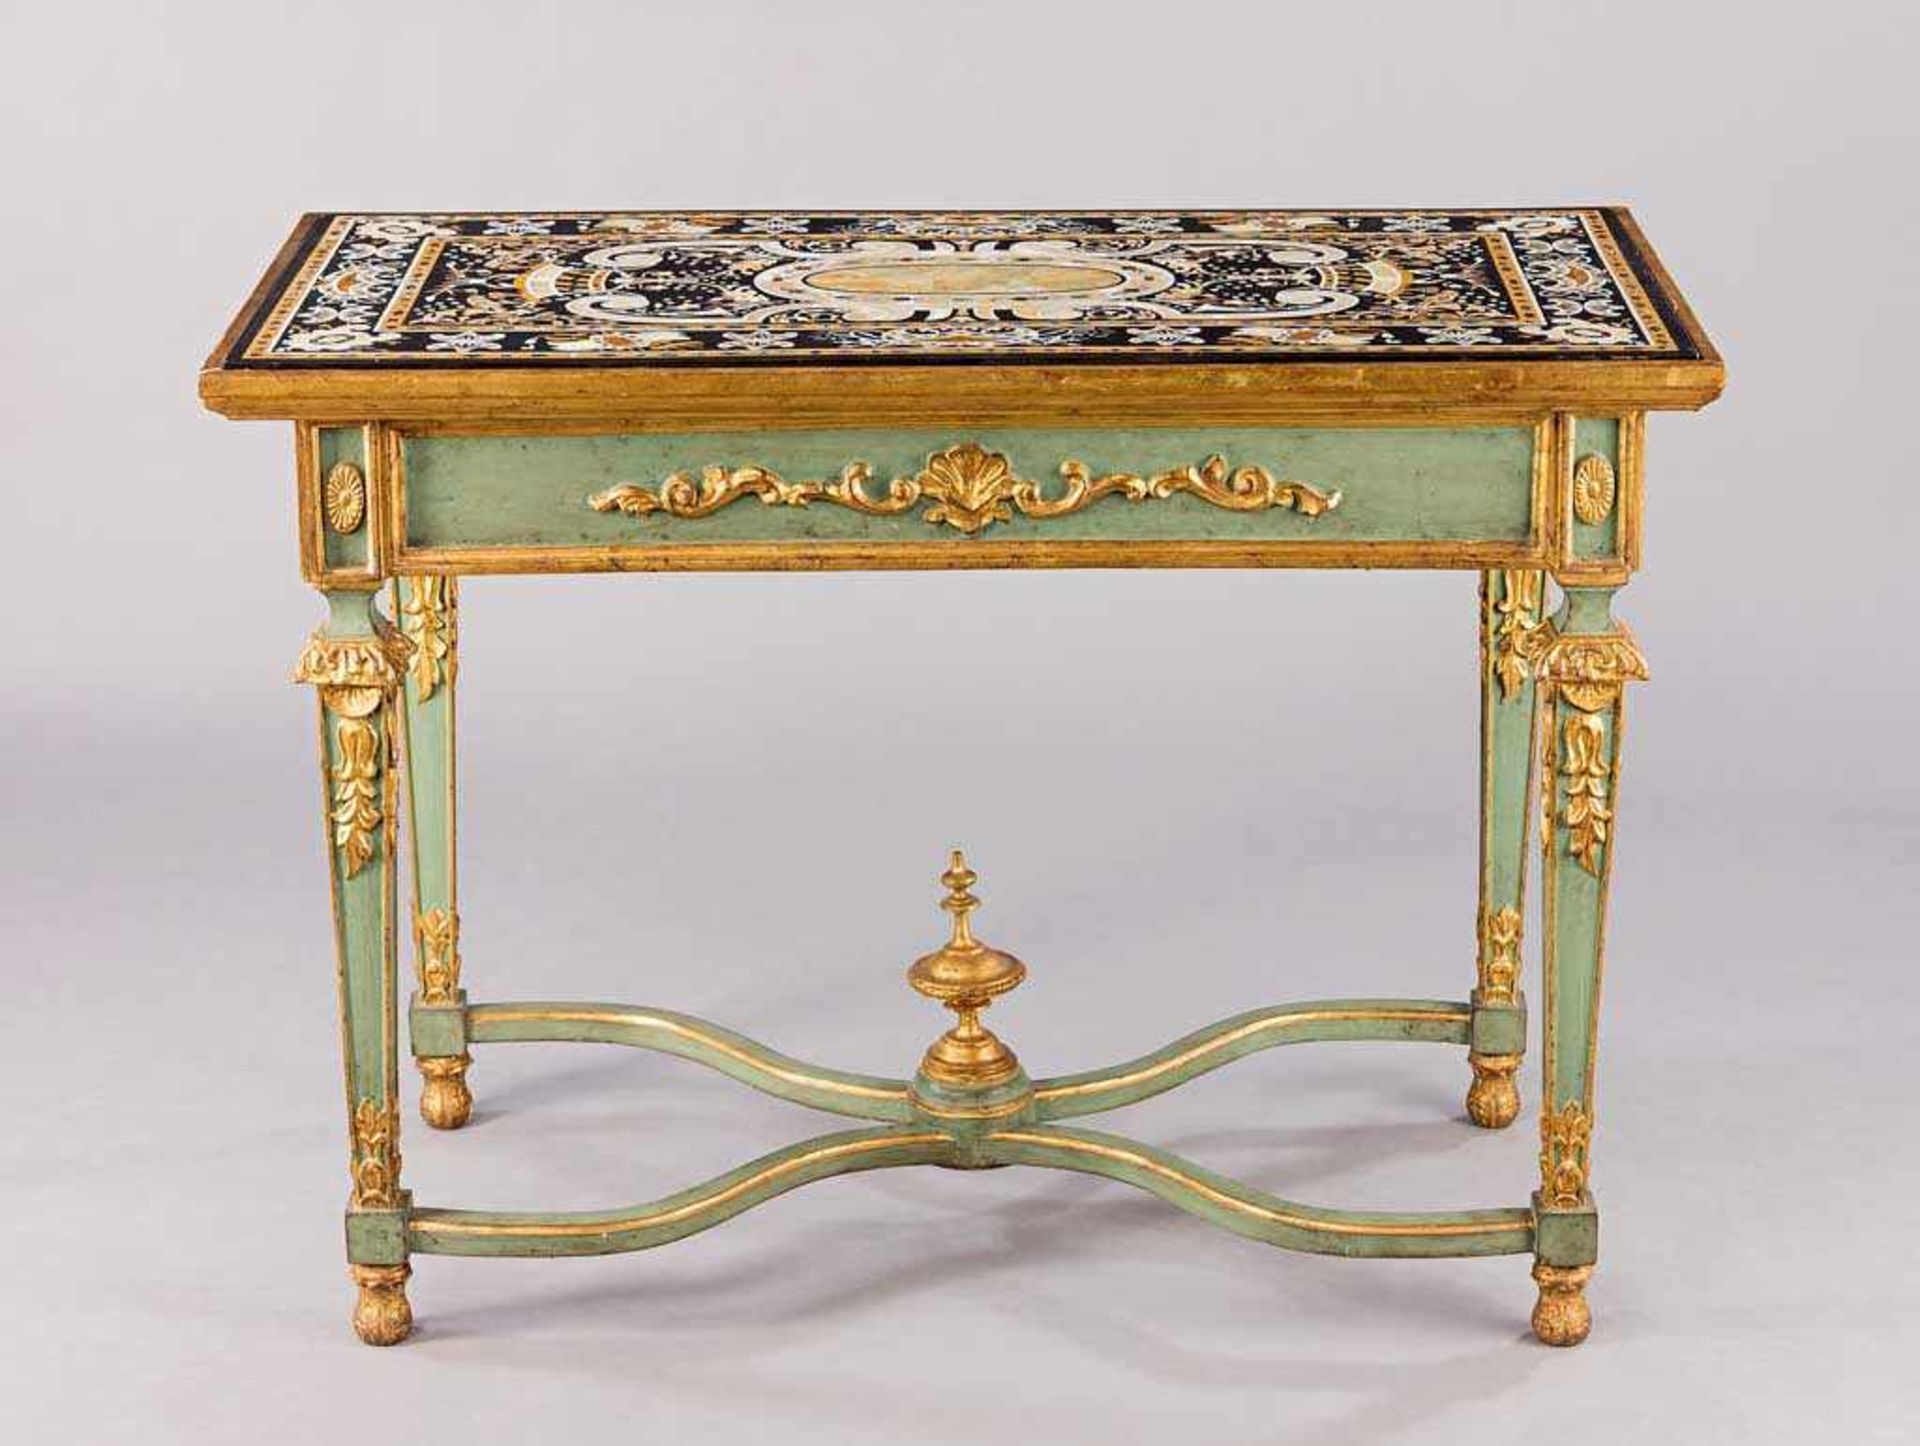 Pietra-dura-Tisch. Gestell im Louis-Seize-Stil, grün und golden gefasst. Platte aus polychromem